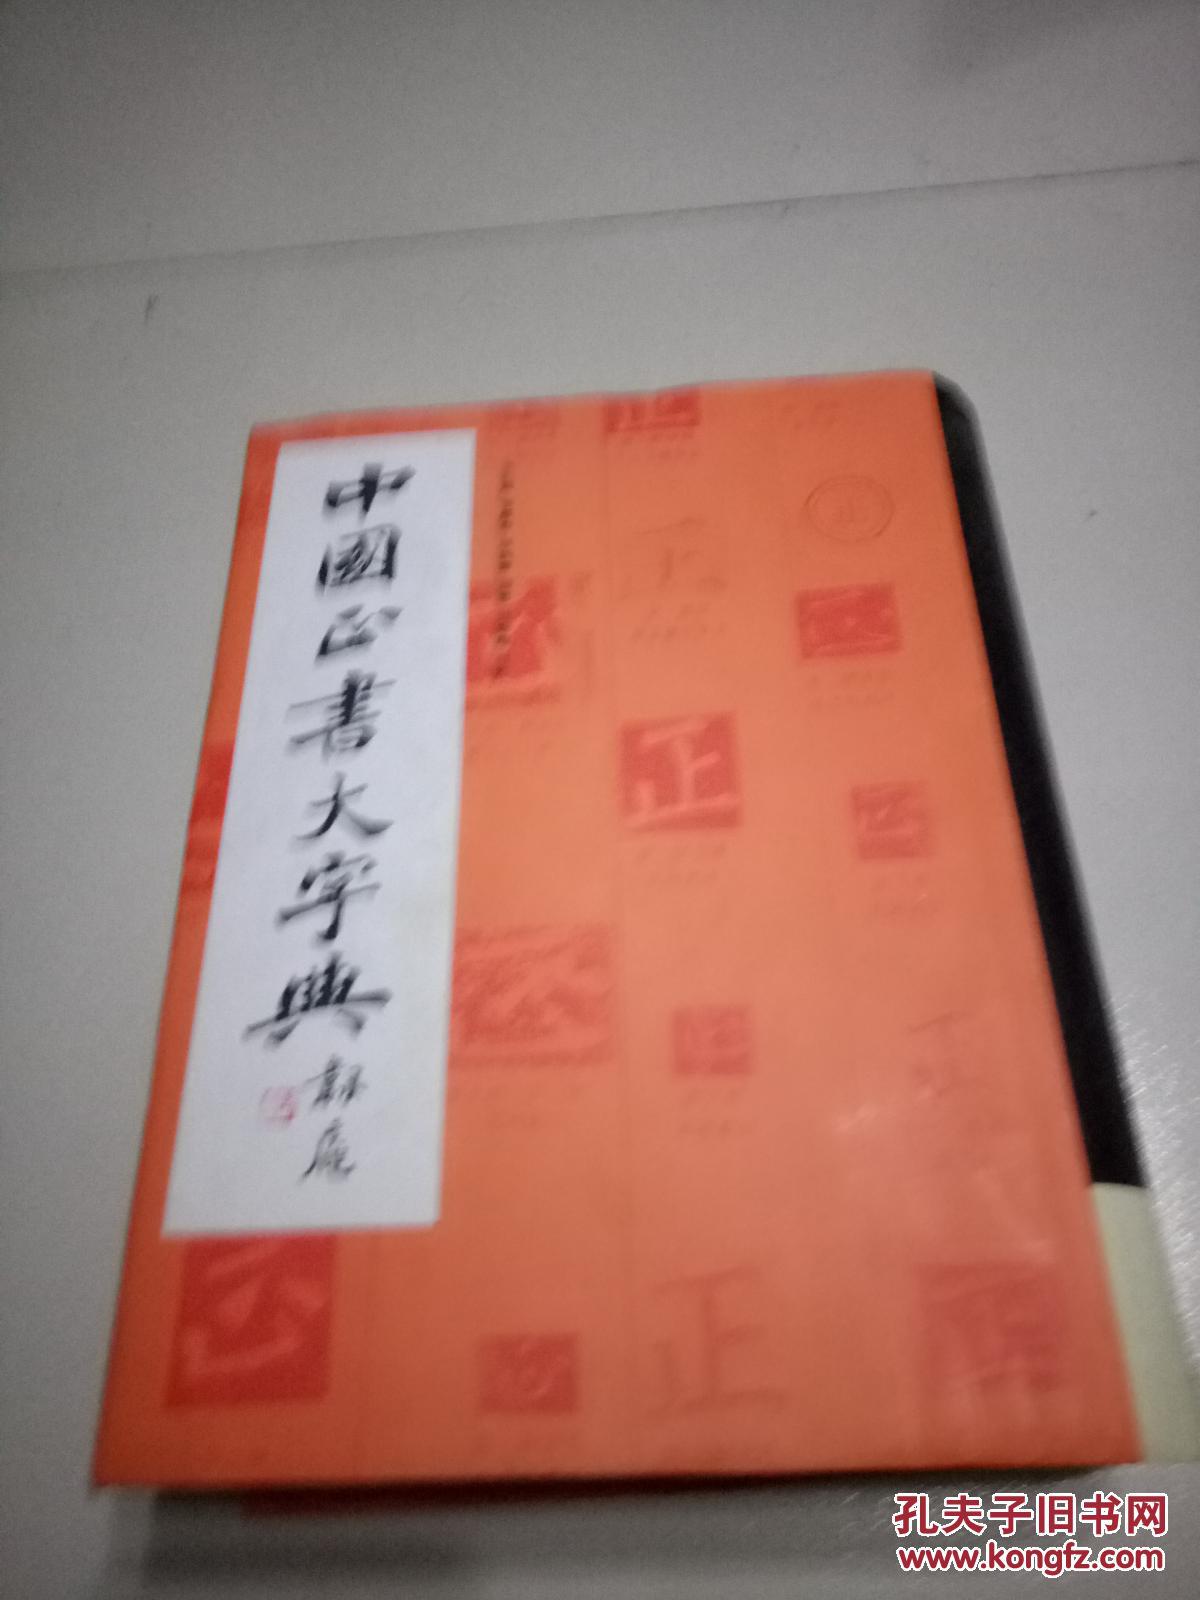 中国正书大字典